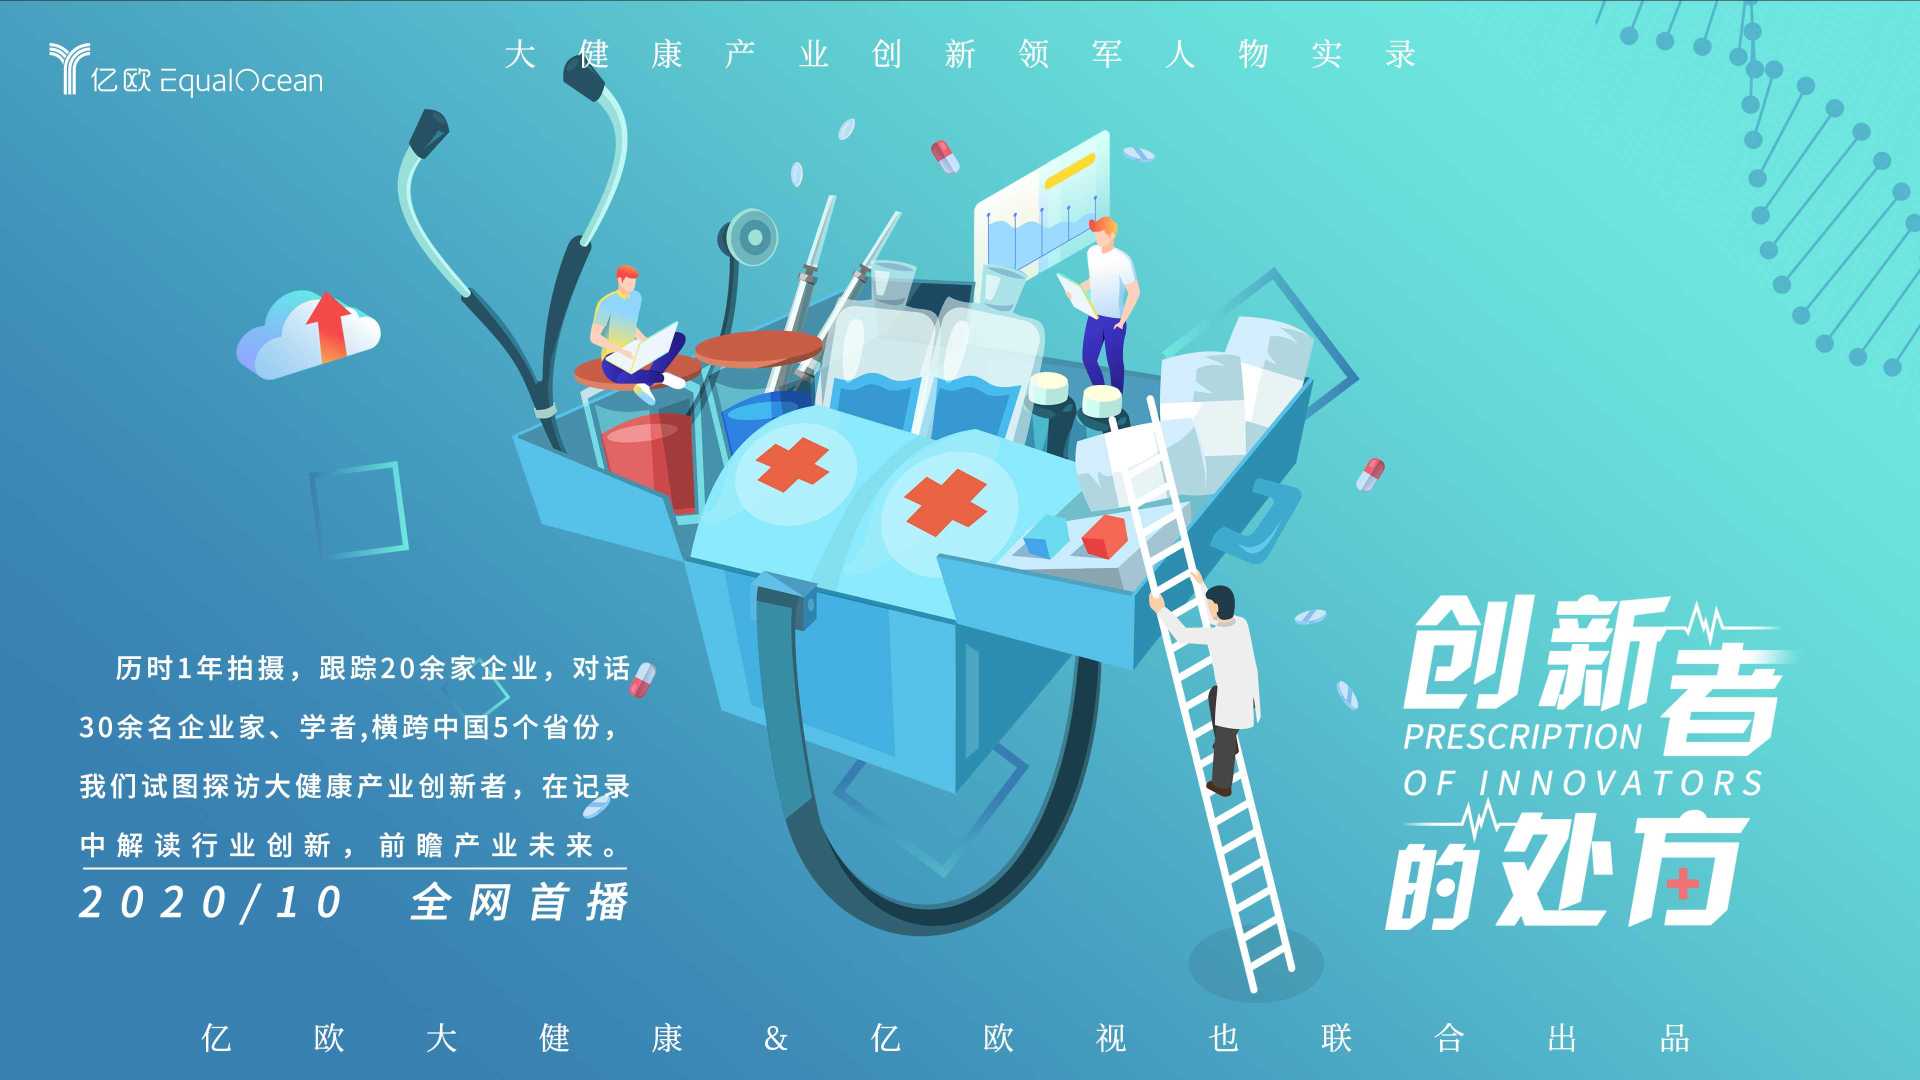 中国创新药公司与国外大公司在创新上进入了并驾齐驱的局面 百济神州 吴晓滨